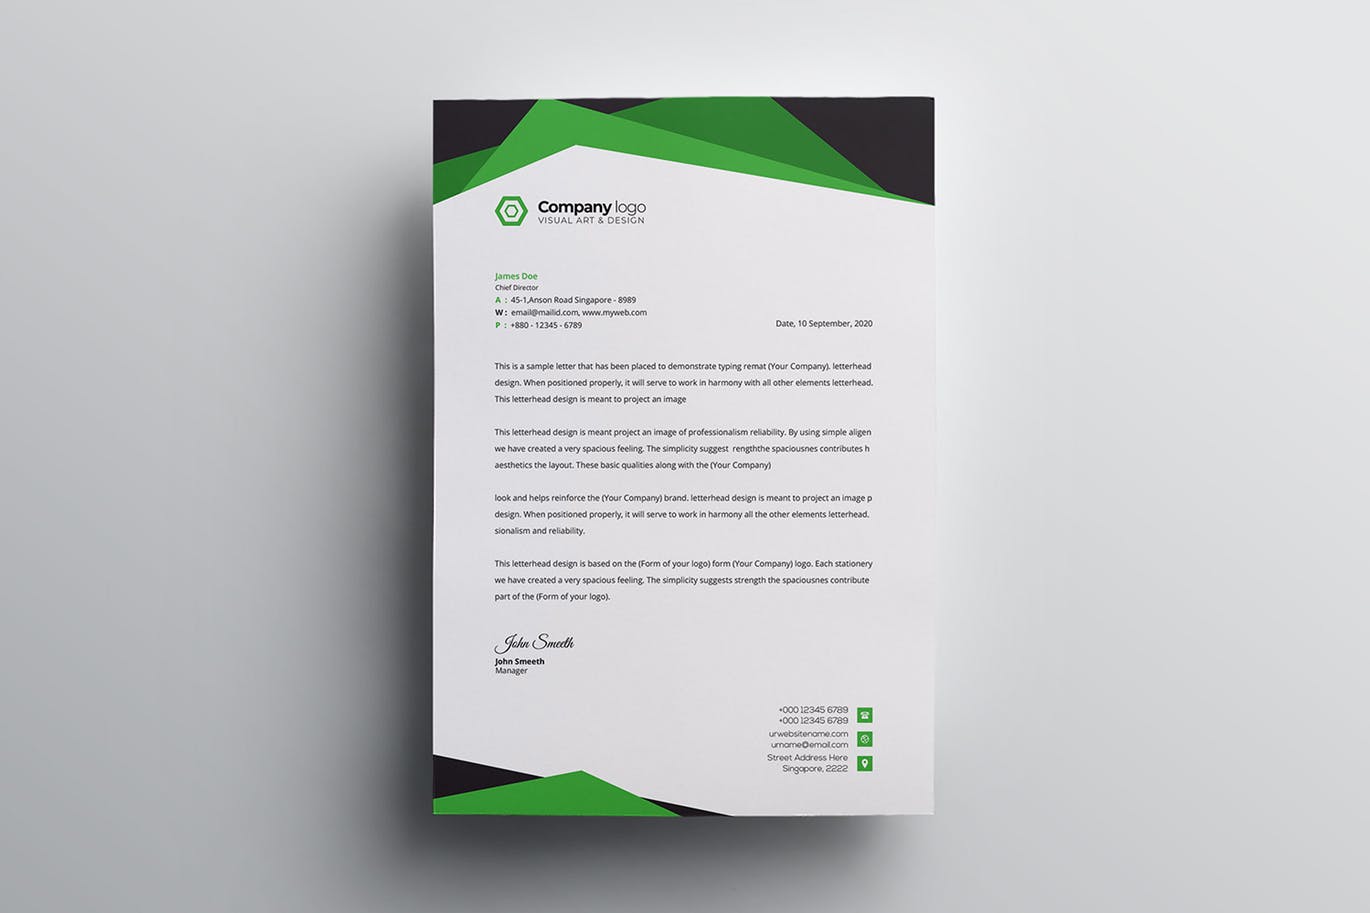 信息科技企业信封设计模板v2 Letterhead插图(1)